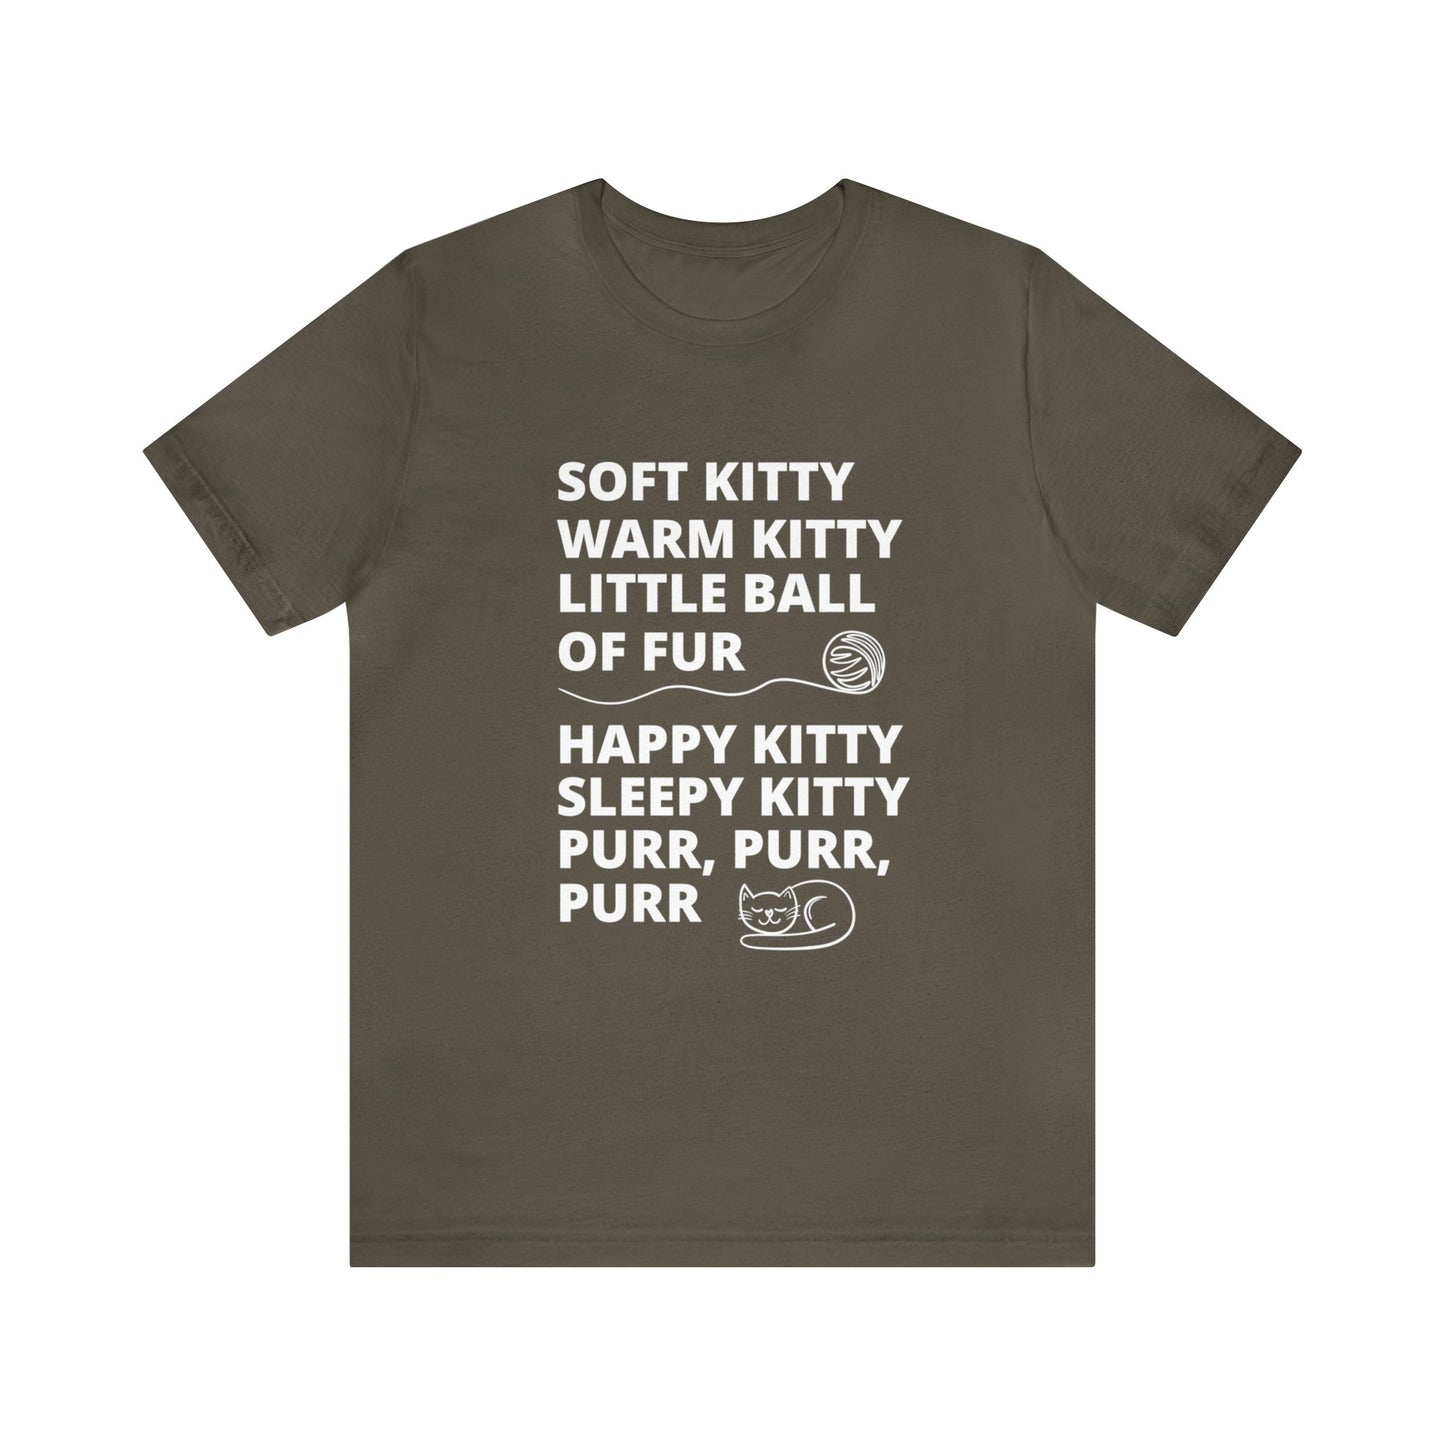 Soft Kitty Warm Kitty Unisex Jersey T-shirt - Big Bang Theory